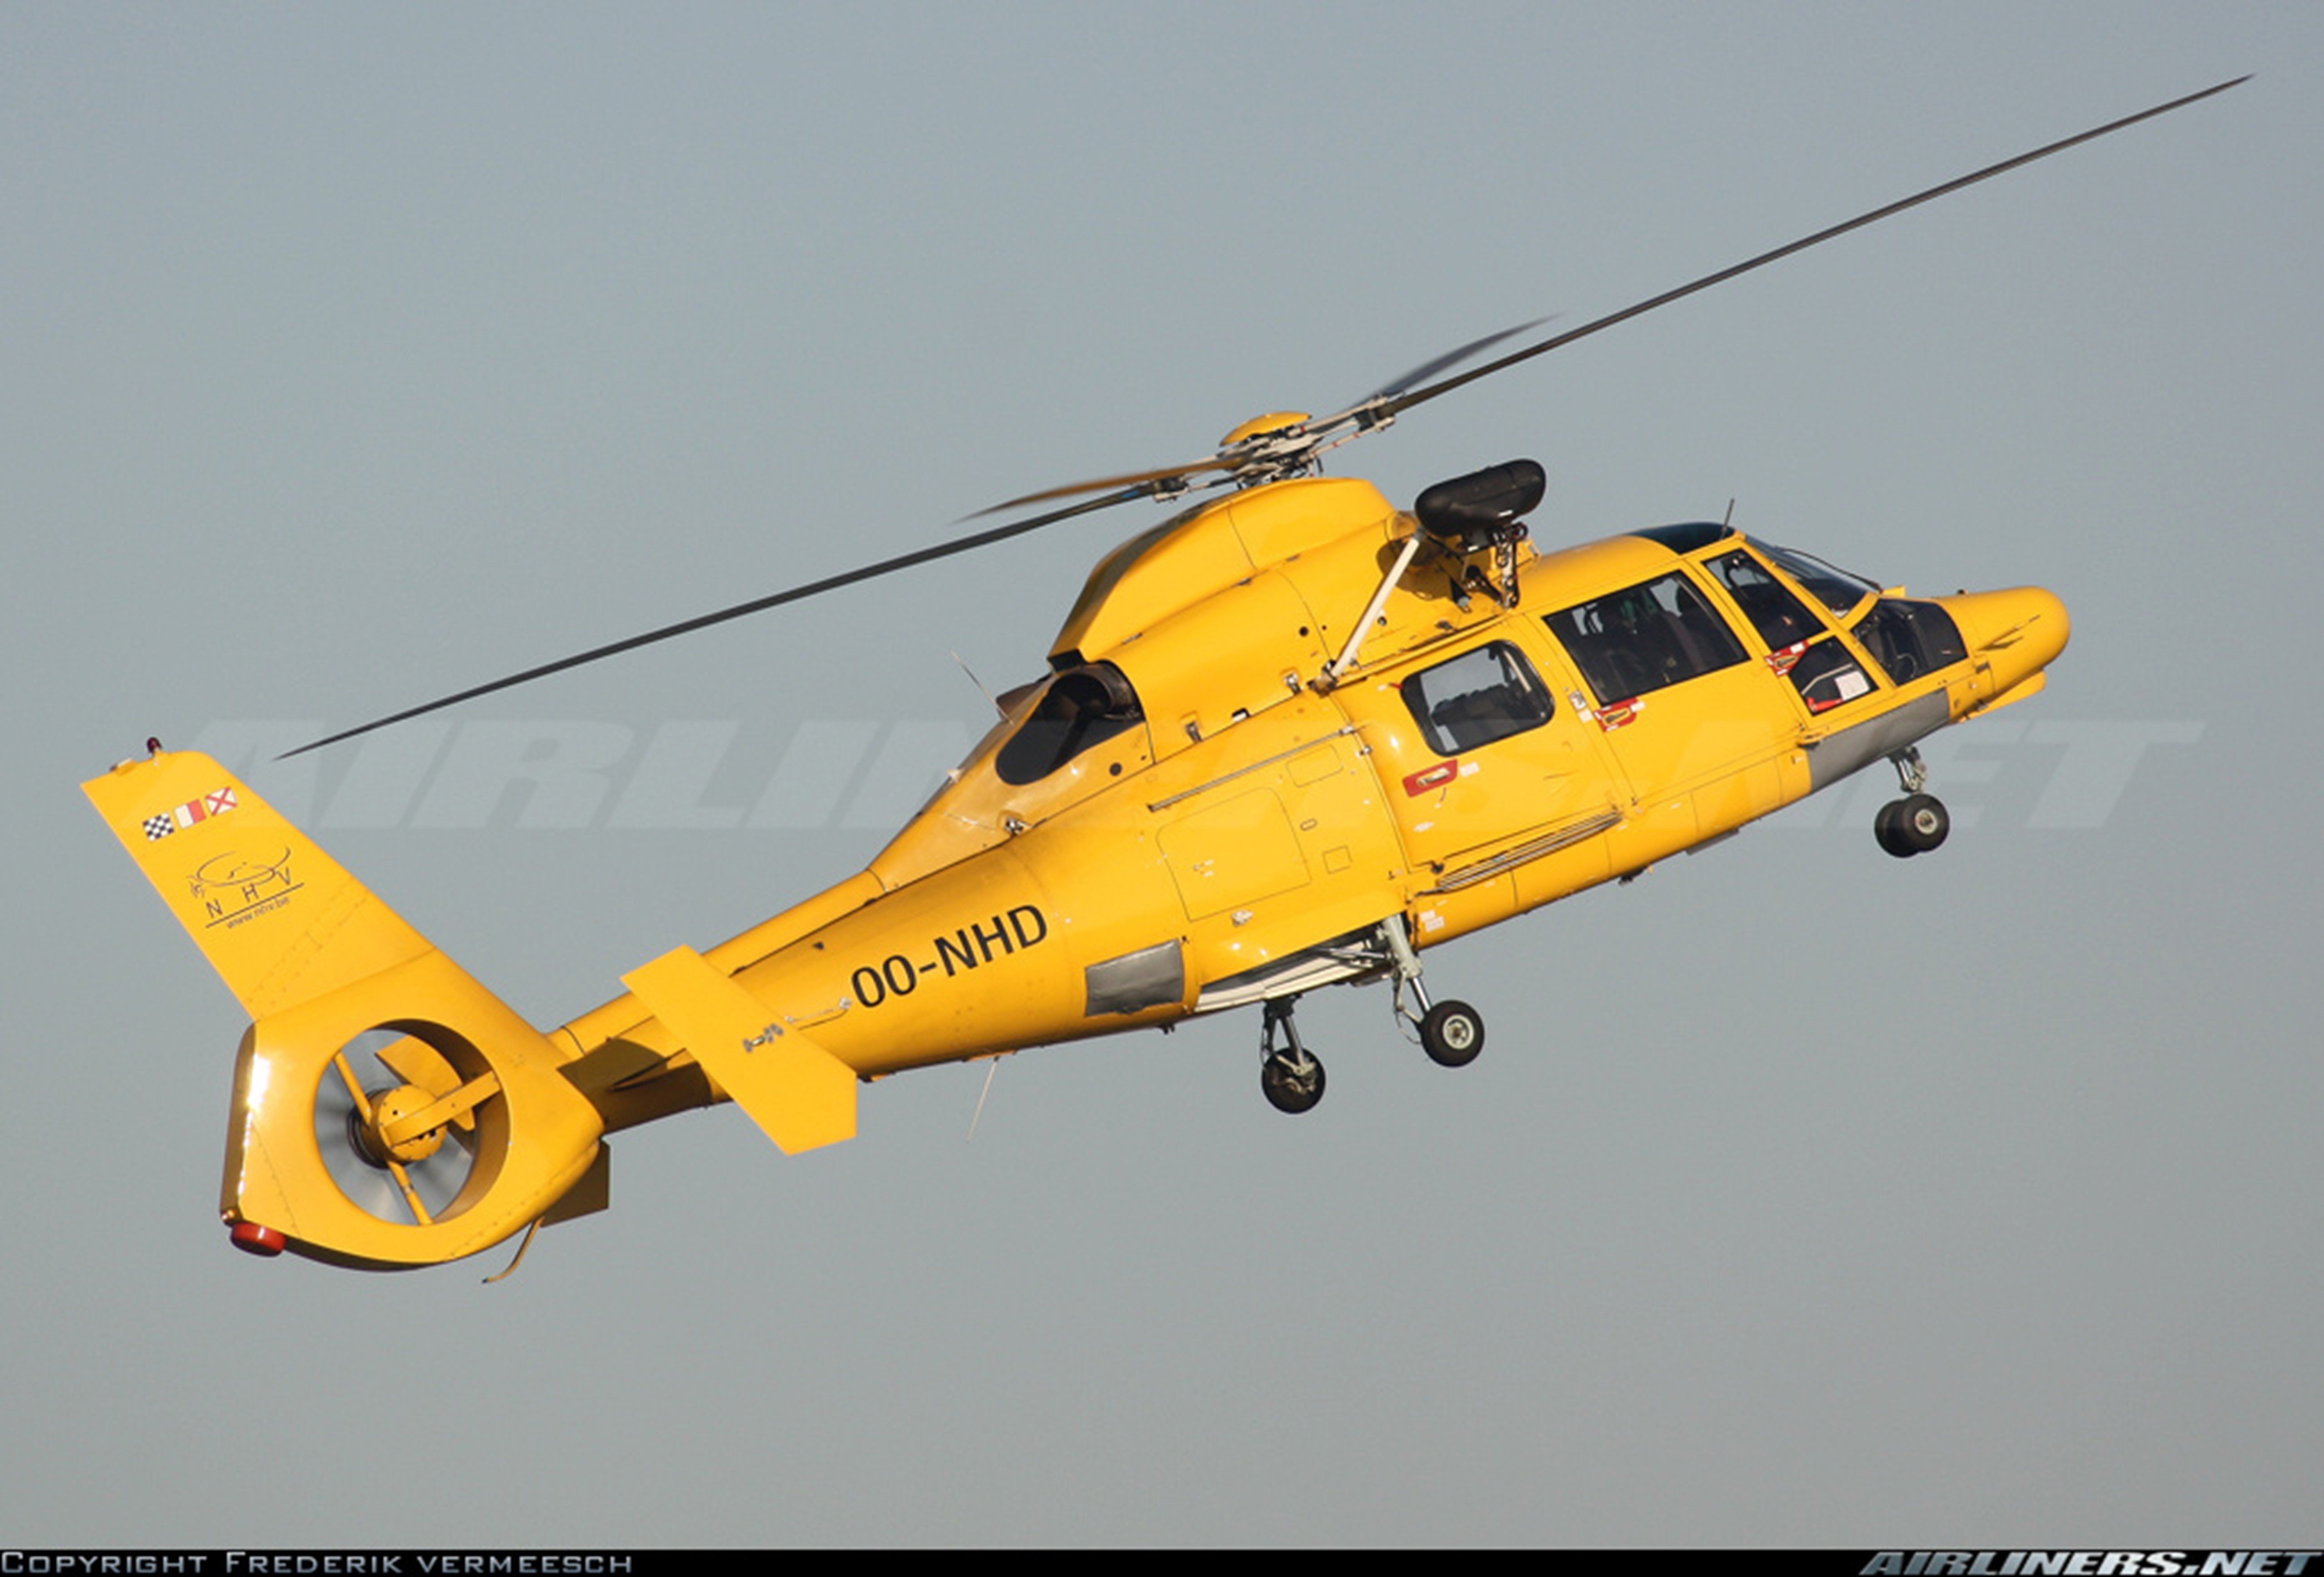 eurocopter, As, 365n, 3, Dauphin, 2, 4000x2715 Wallpaper